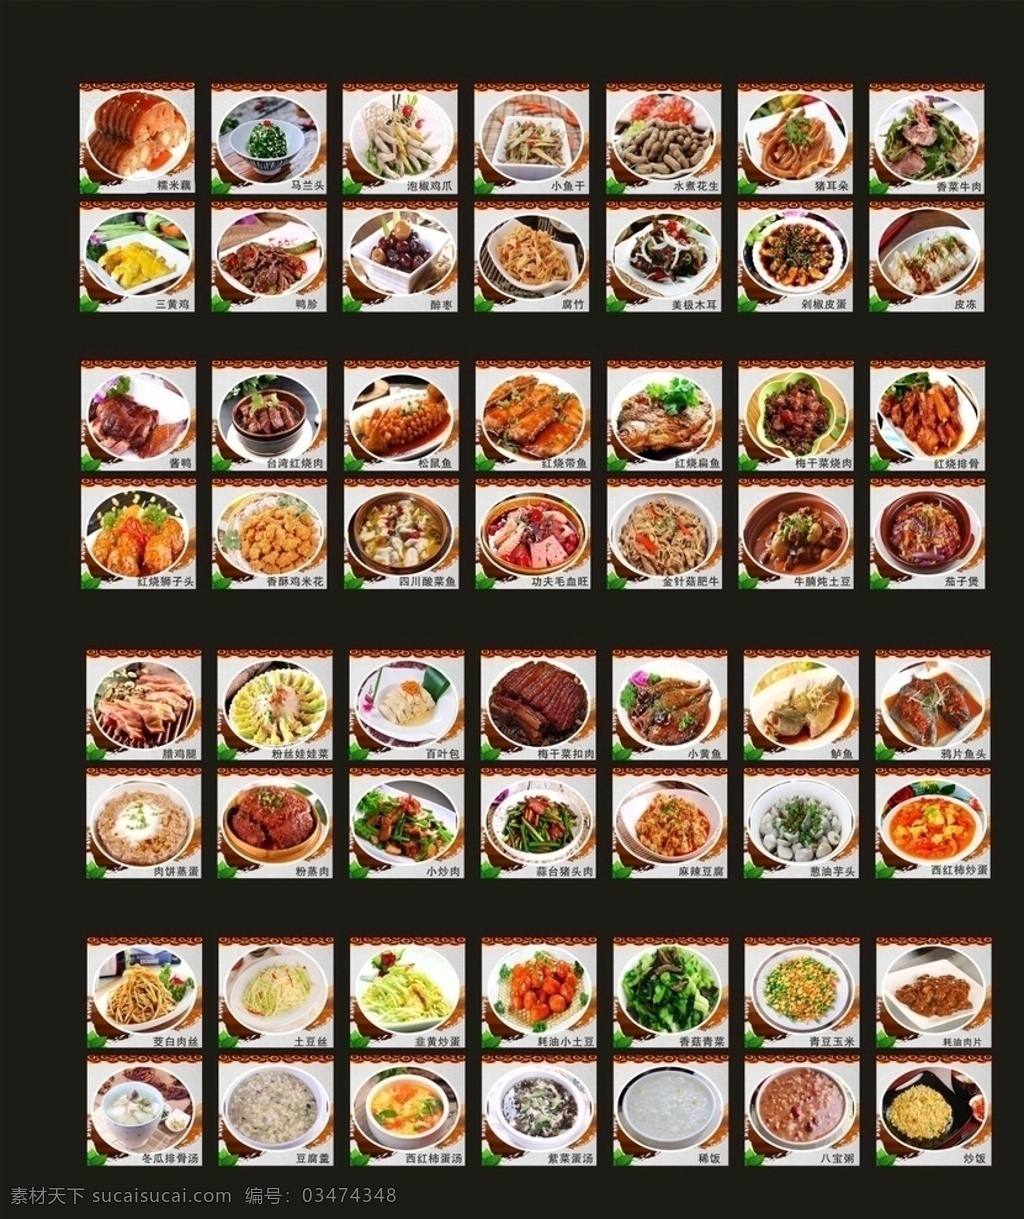 中式快餐菜图 中式 快餐 灯箱 菜图 特色菜 小炒类 干锅累 菜单菜谱